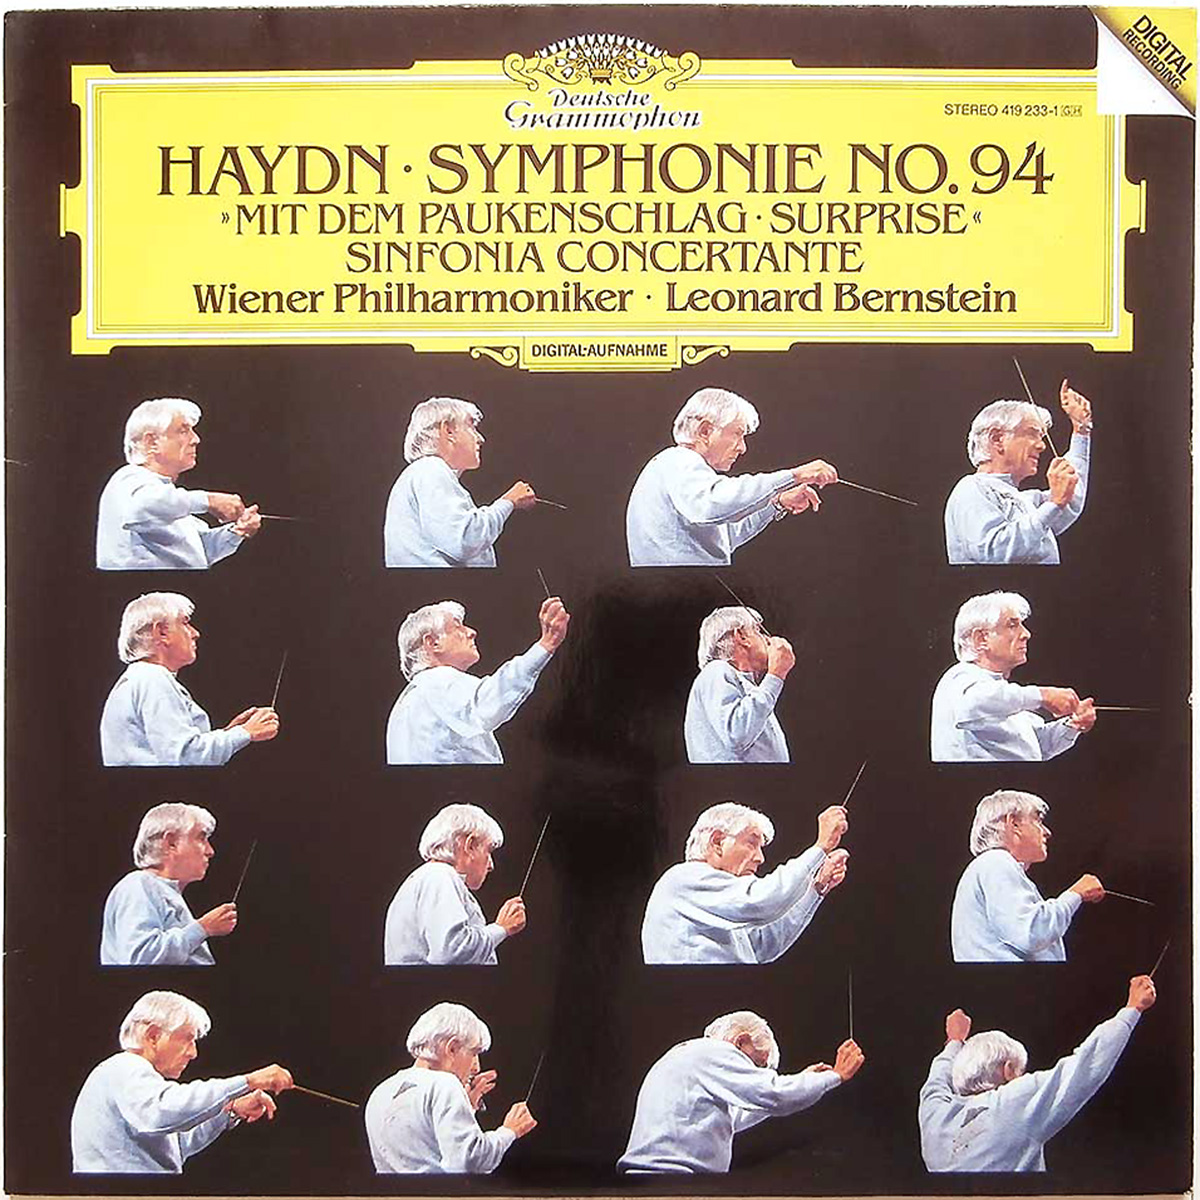 DGG Haydn Symphonie 94 Sinfonia Concertante Bernstein DGG Digital Aufnahme